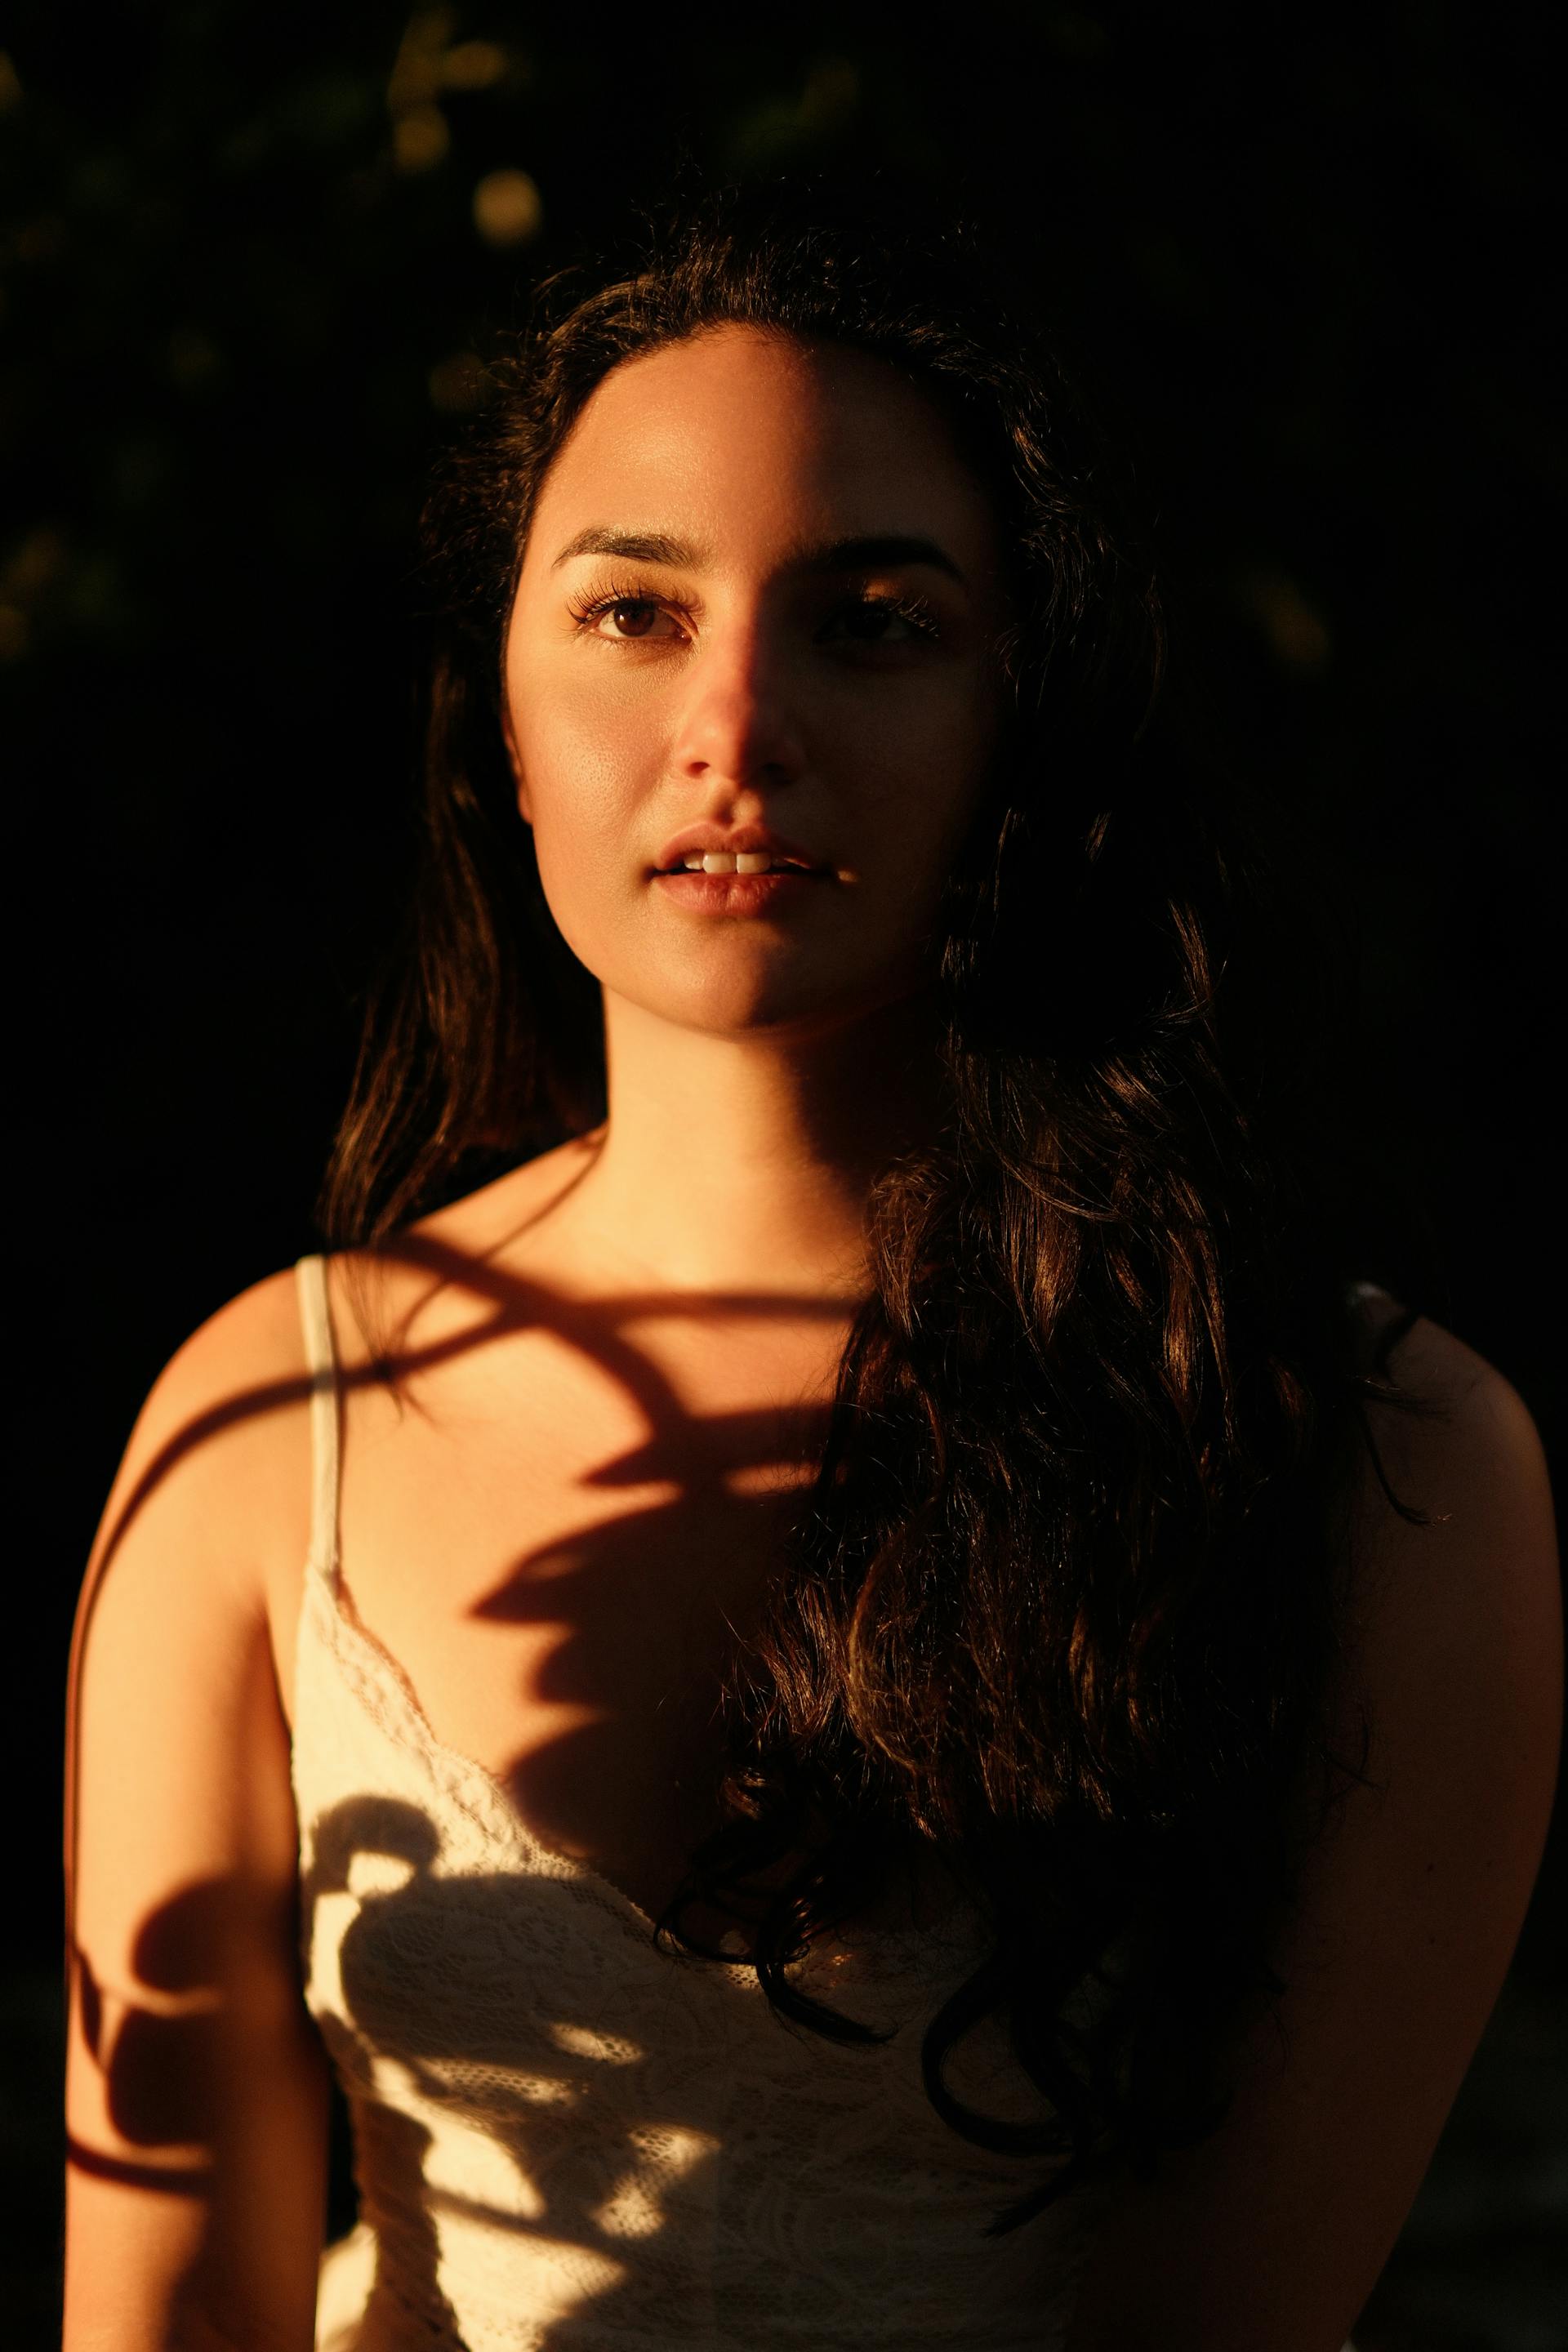 Retrato de una mujer joven con sombras que caen sobre su cuerpo | Fuente: Pexels